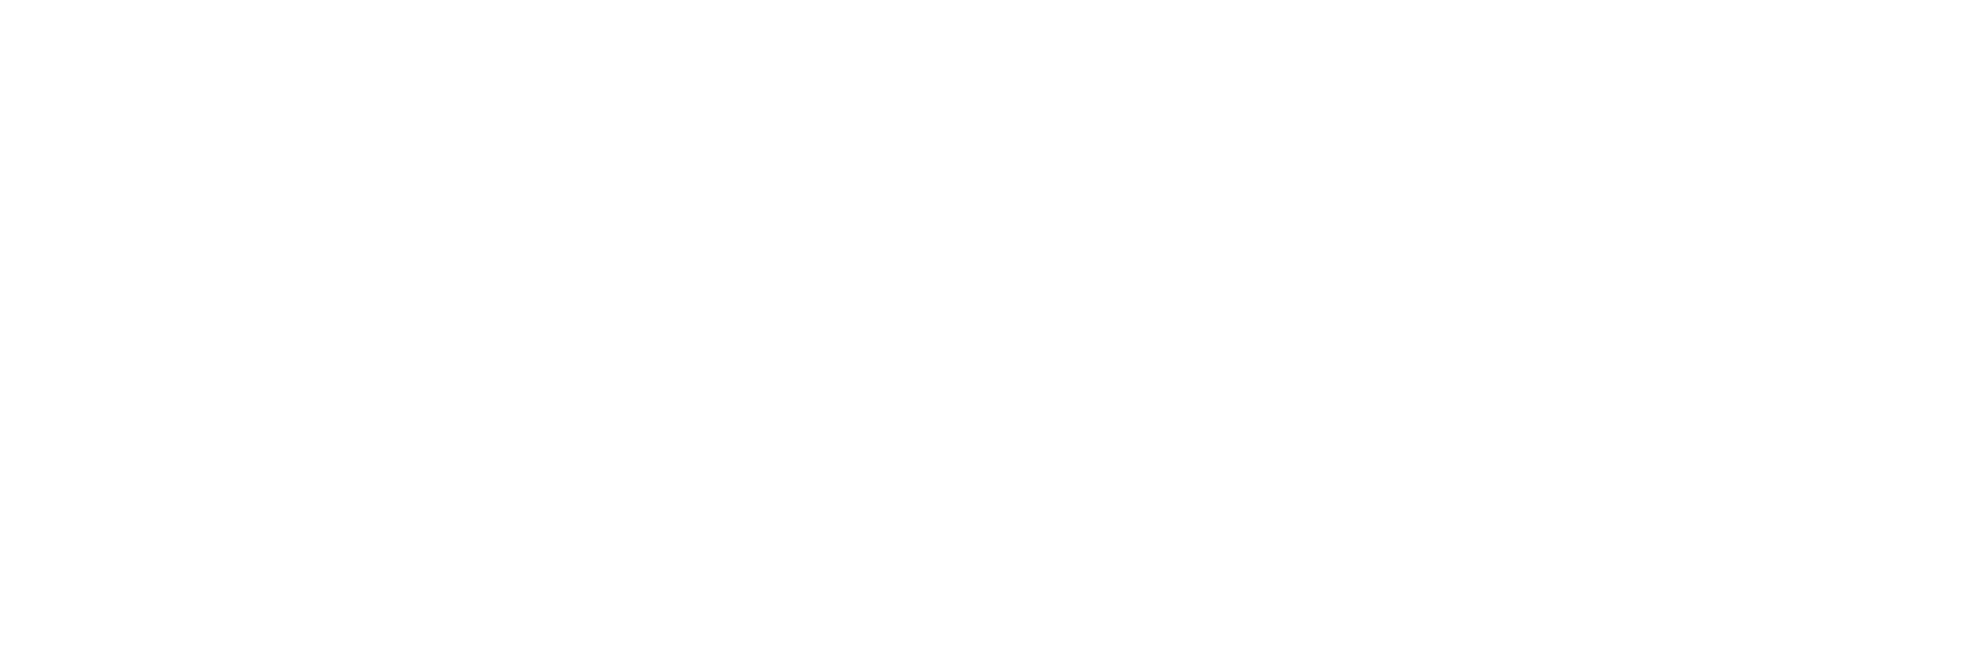 Cellesti | Presale is live